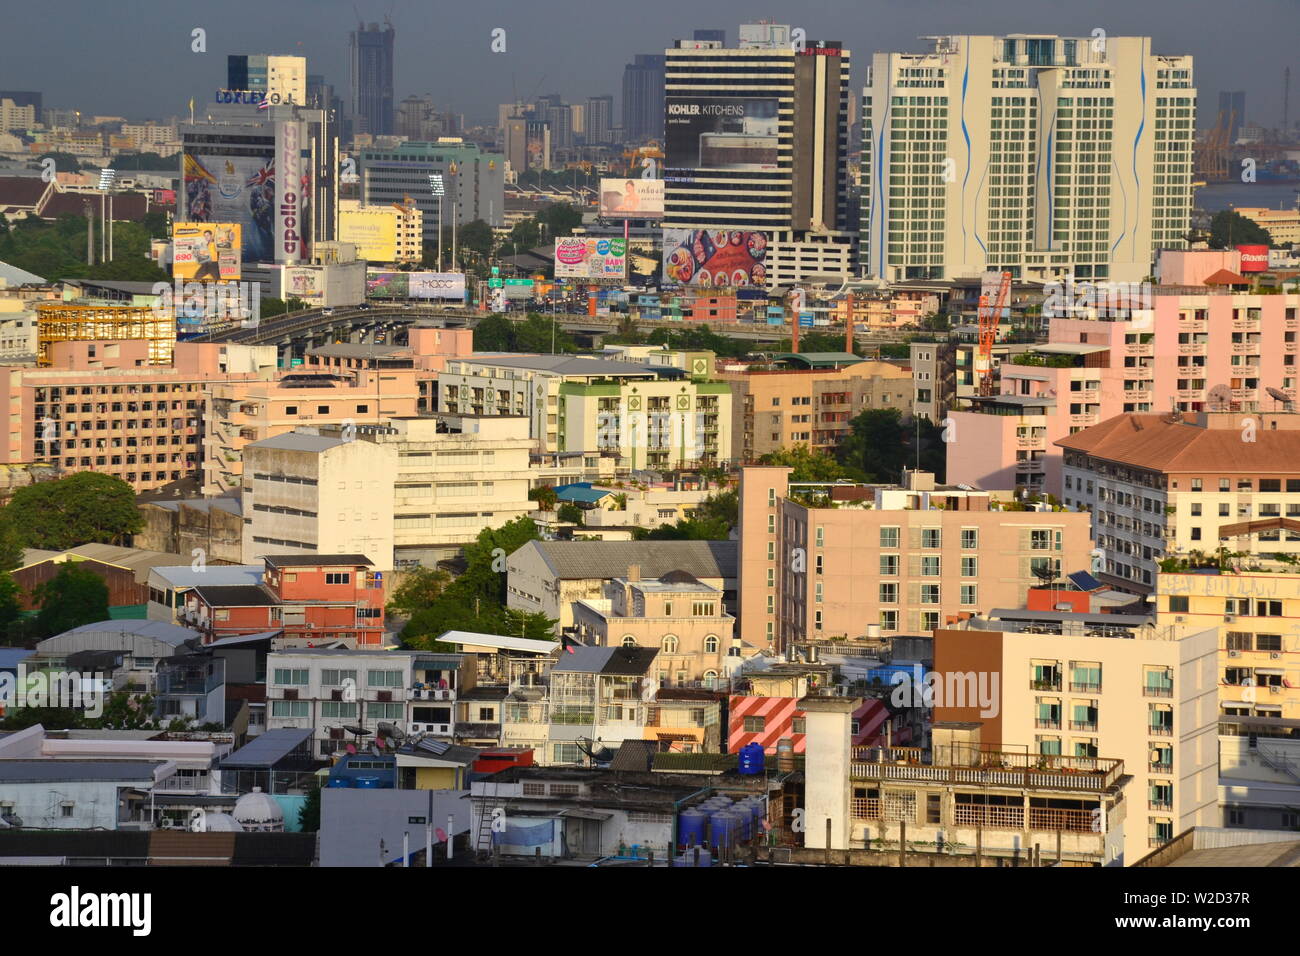 Una vista de alto nivel de rascacielos en el centro de Bangkok, Tailandia, mirando al oeste del distrito de Sathorn Foto de stock